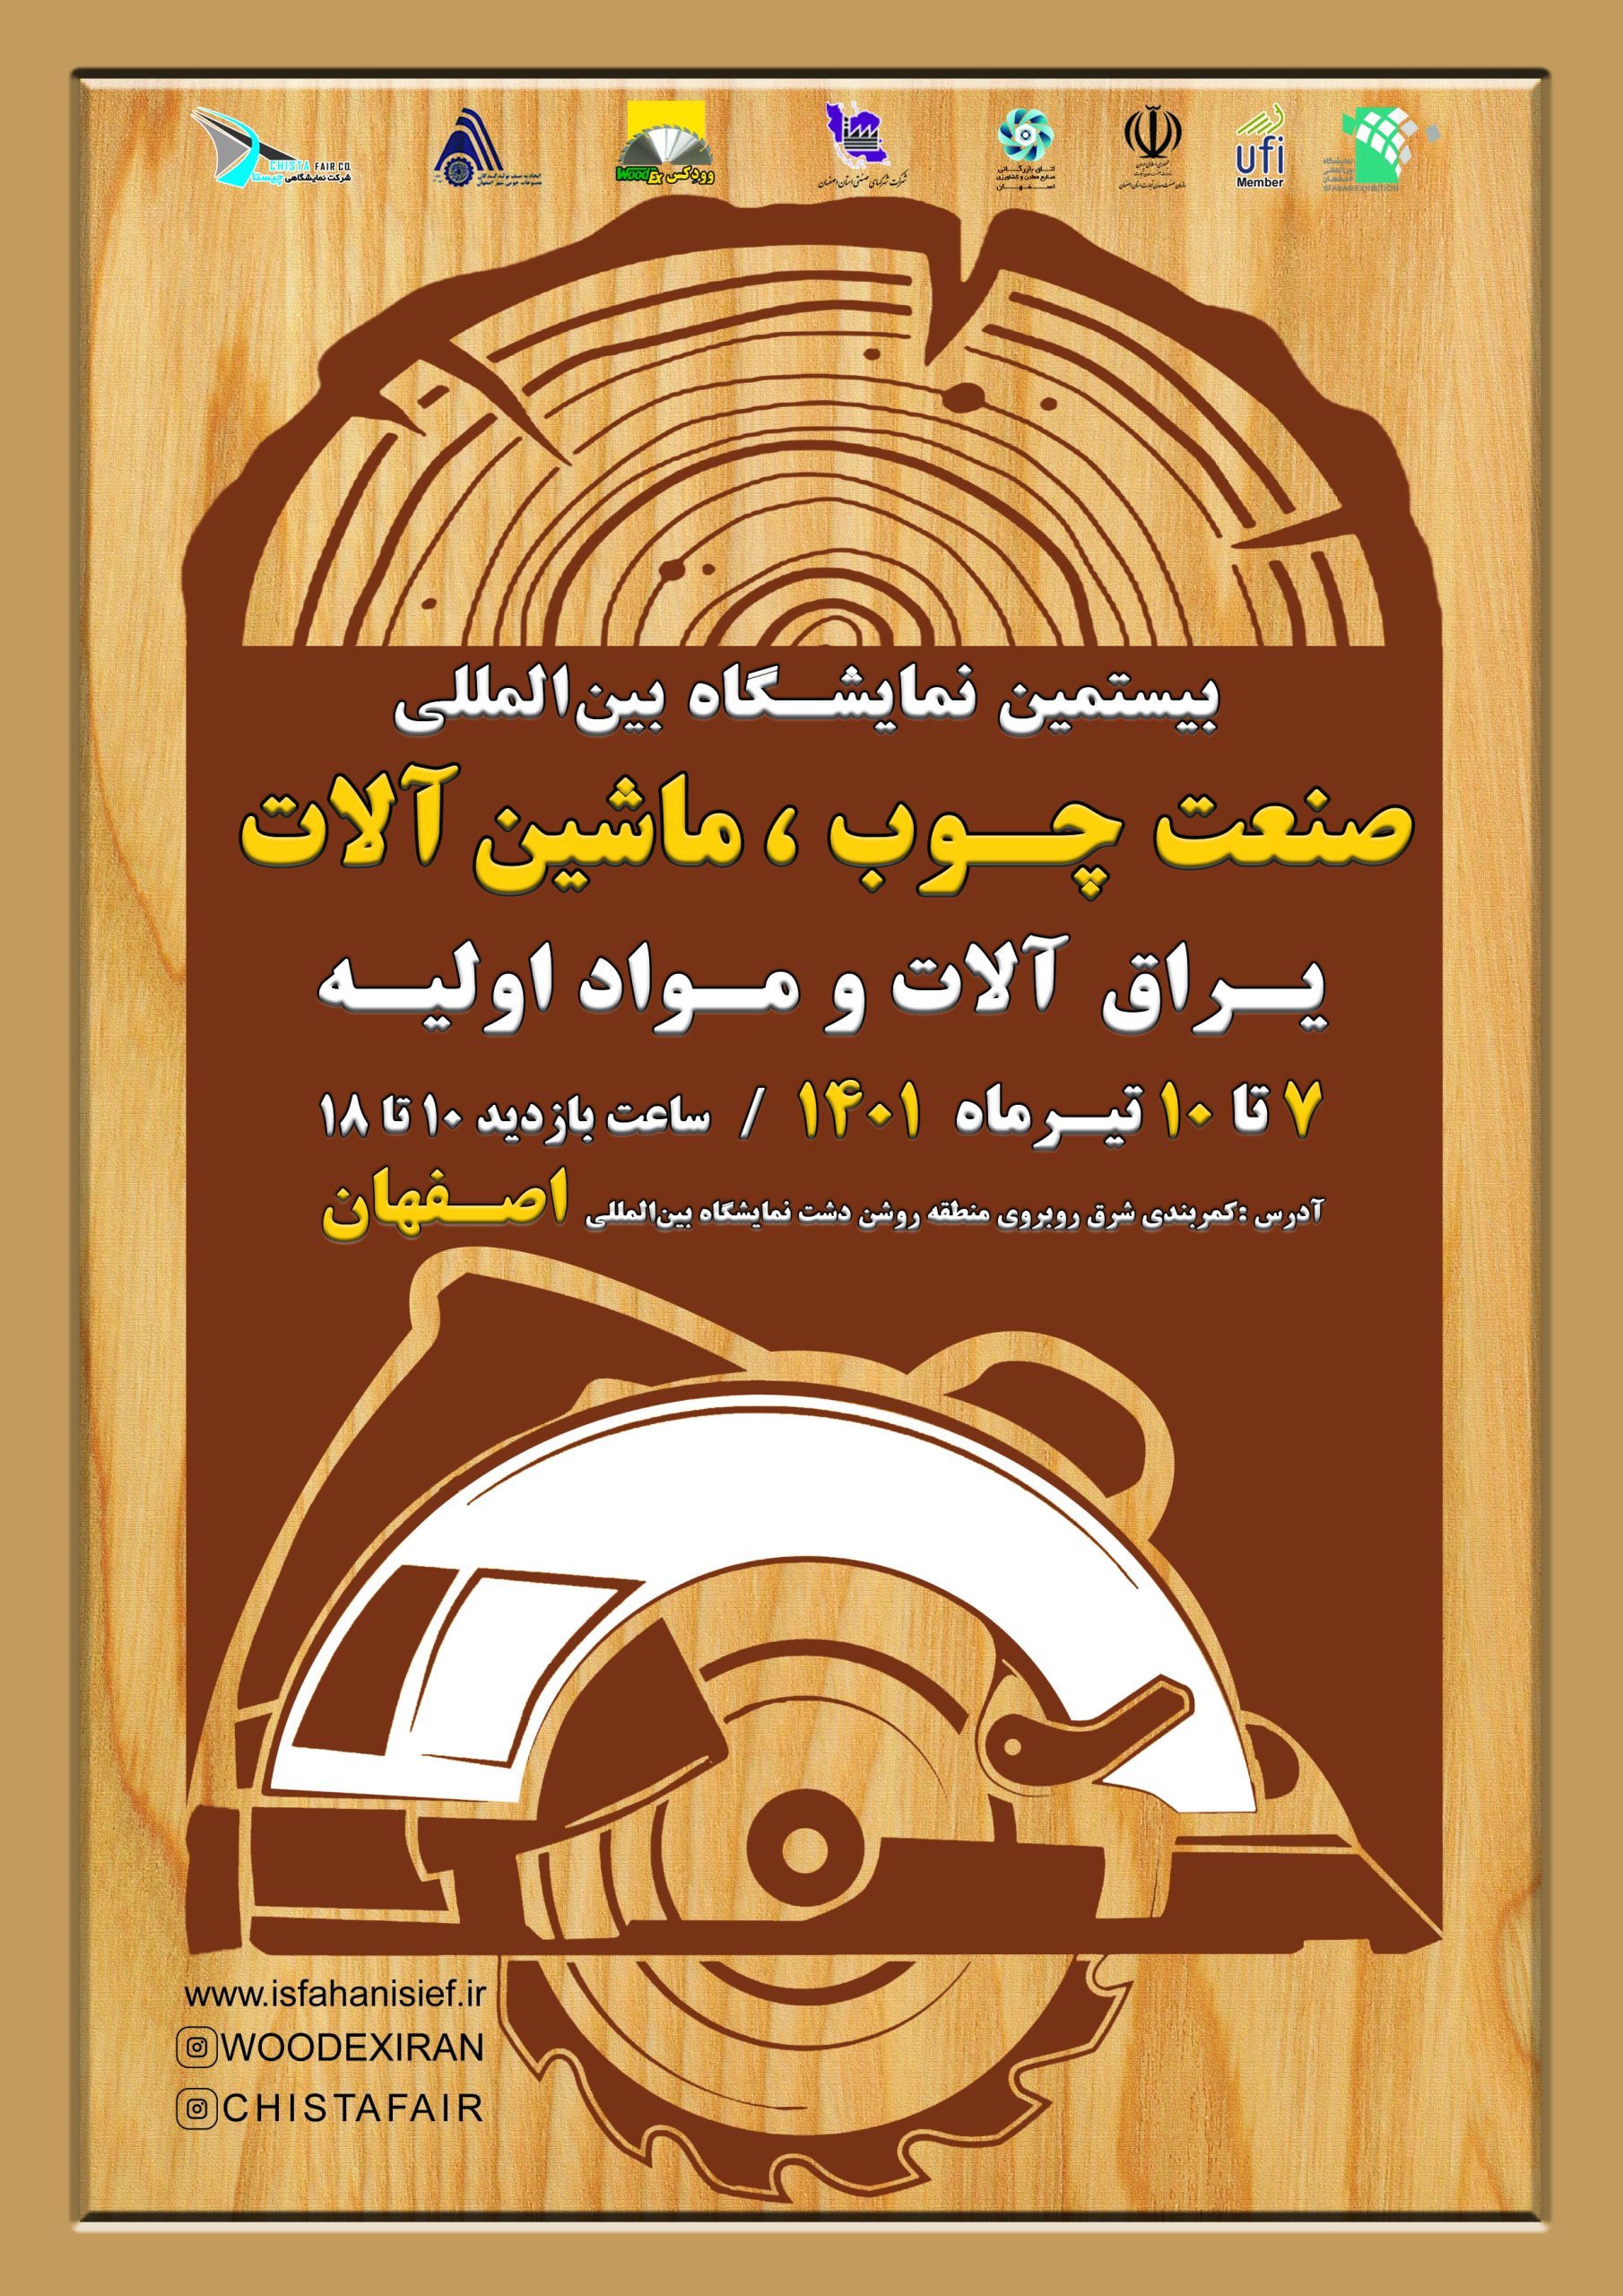 بیستمین نمایشگاه بین المللی ماشین آلات، یراق آلات، مواد اولیه صنایع چوب - اصفهان